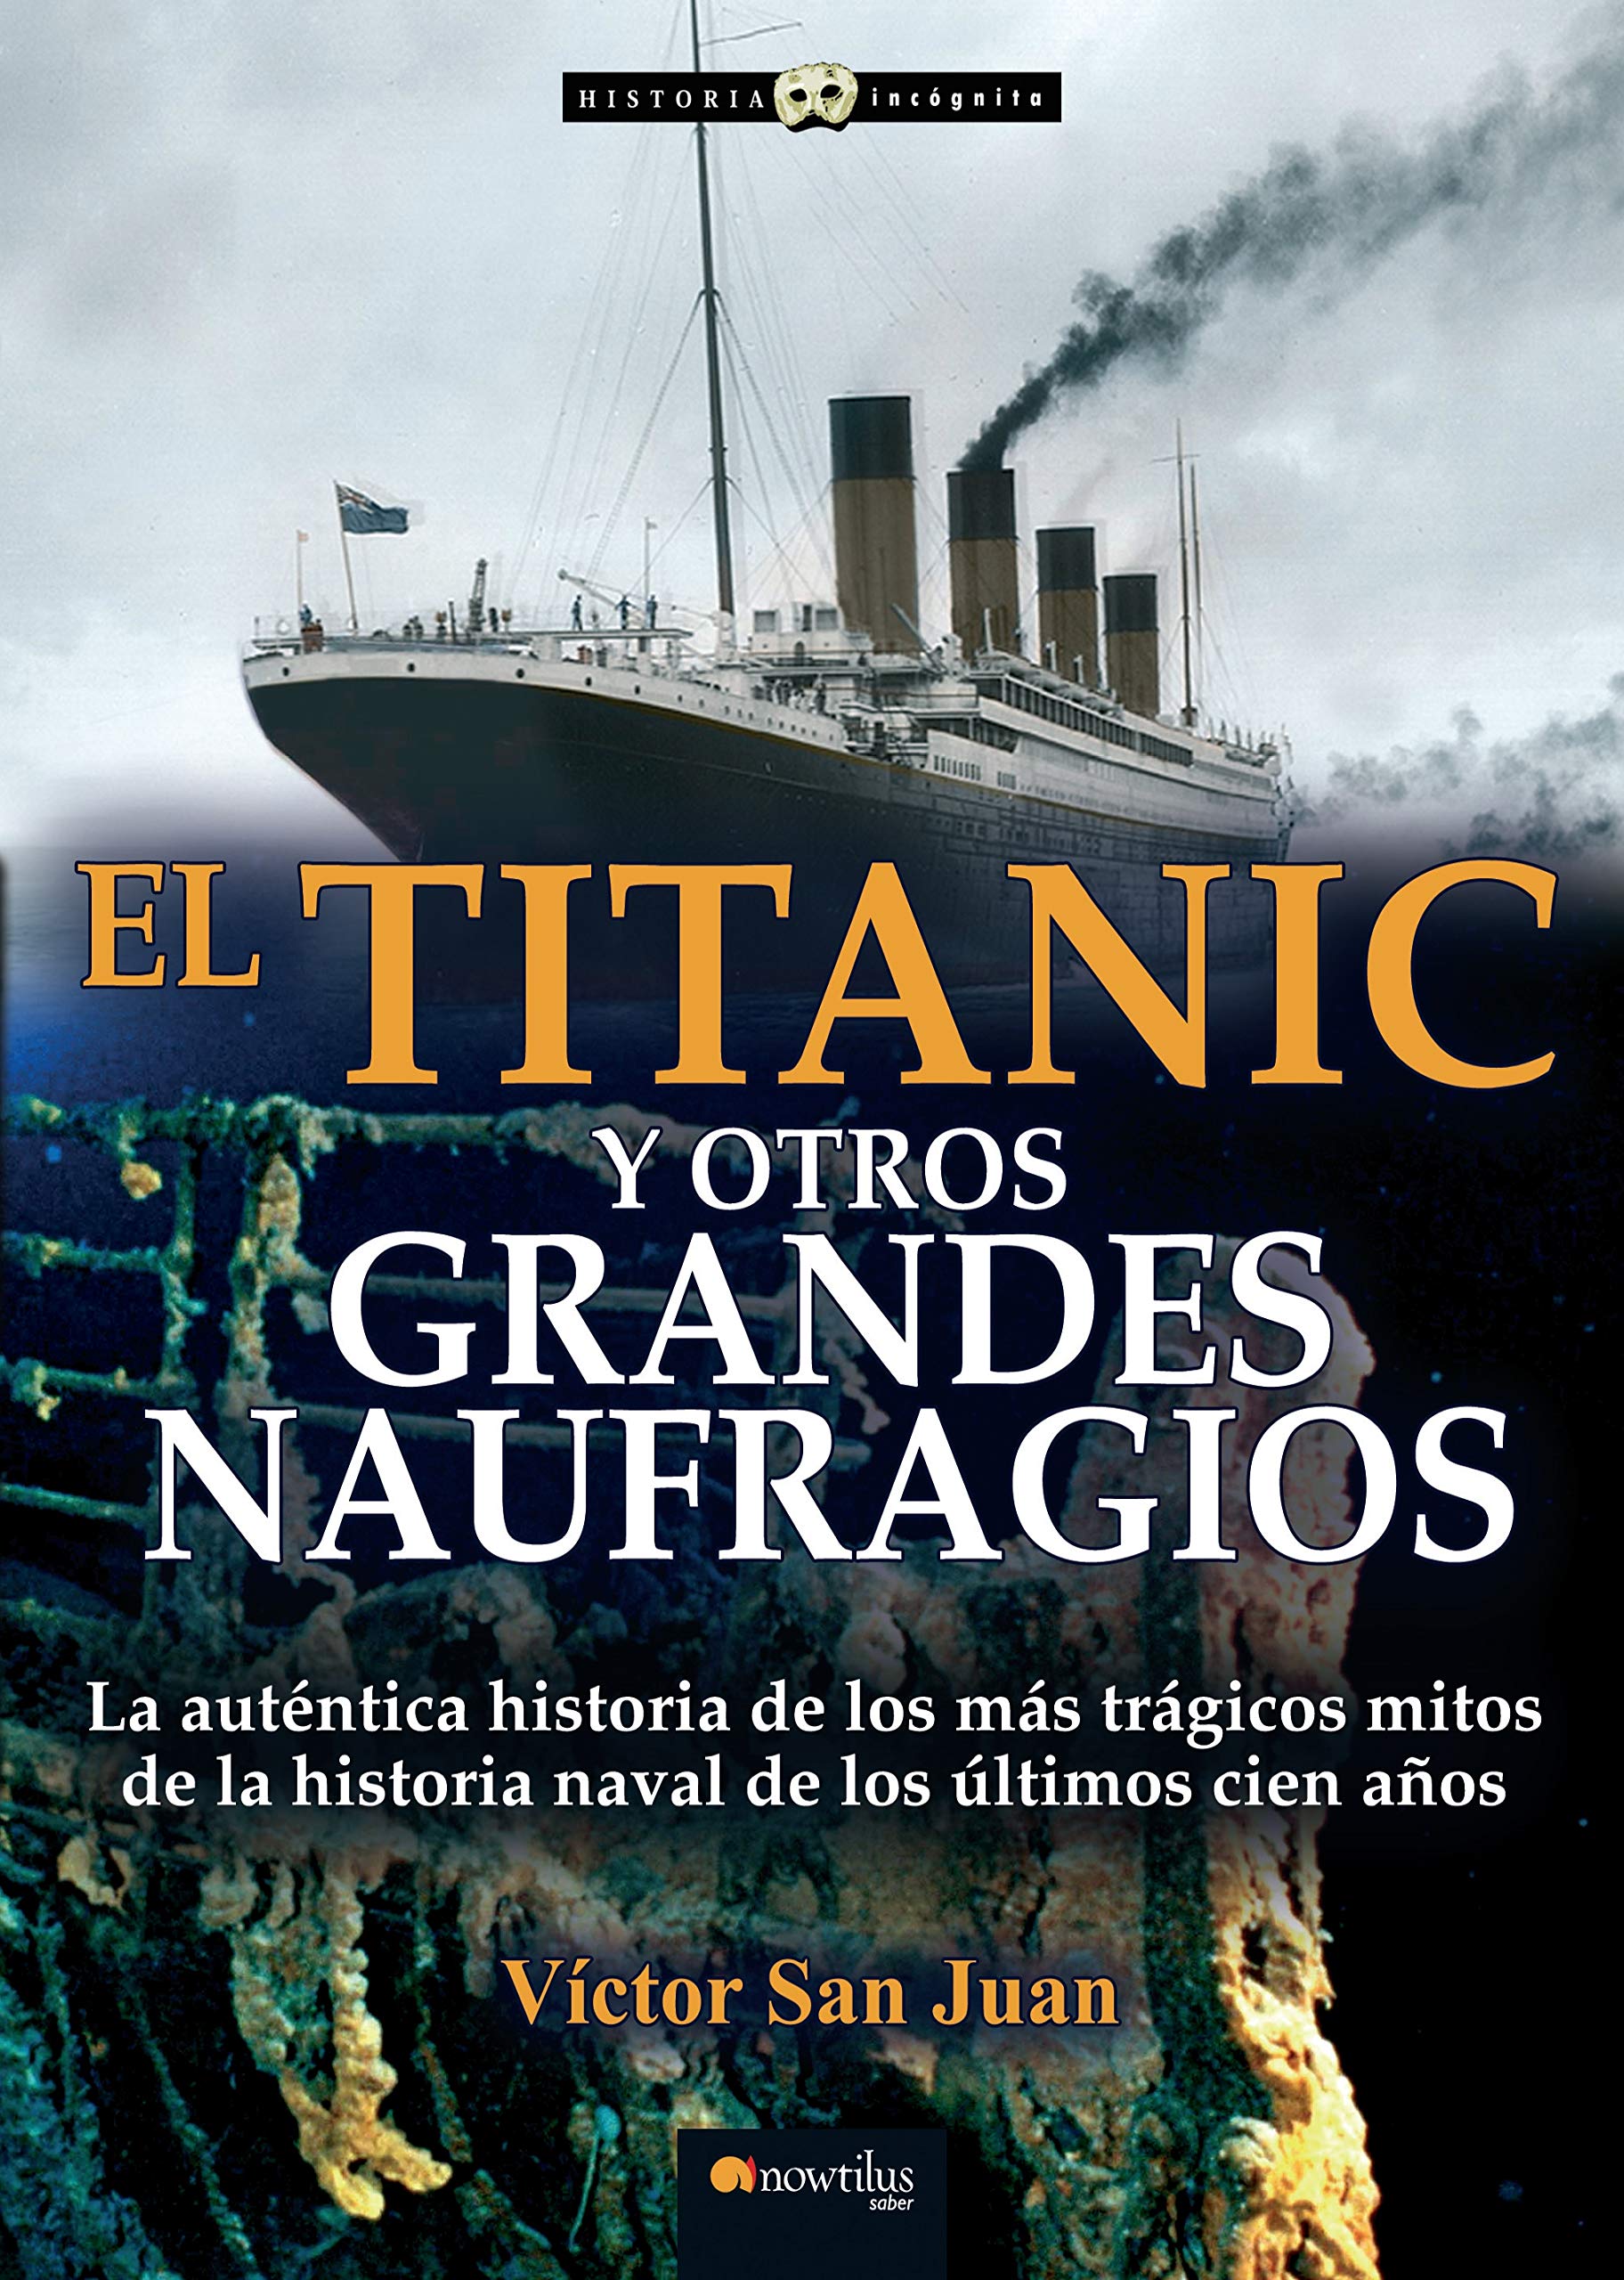 El Titanic y otros grandes naufragios, (2014) por Víctor San Juan